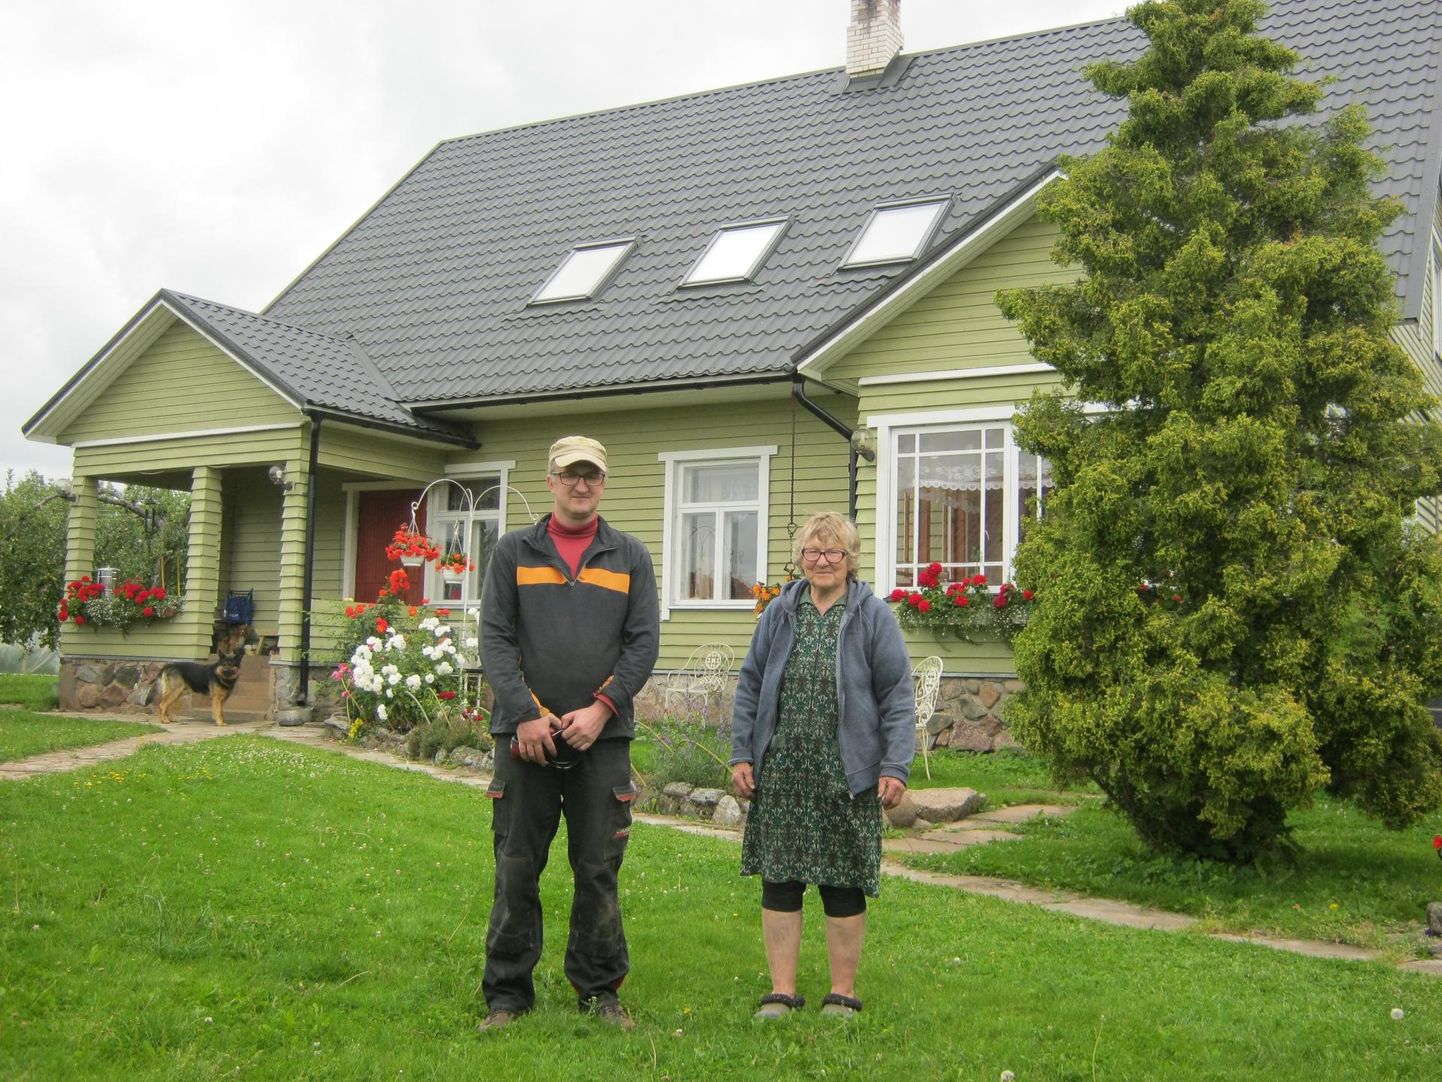 Vana-Peedukse talu peremees Margus Sepp ja tema ema Riina jaksavad põllutööde kõrvalt ka koduaias ilu luua.